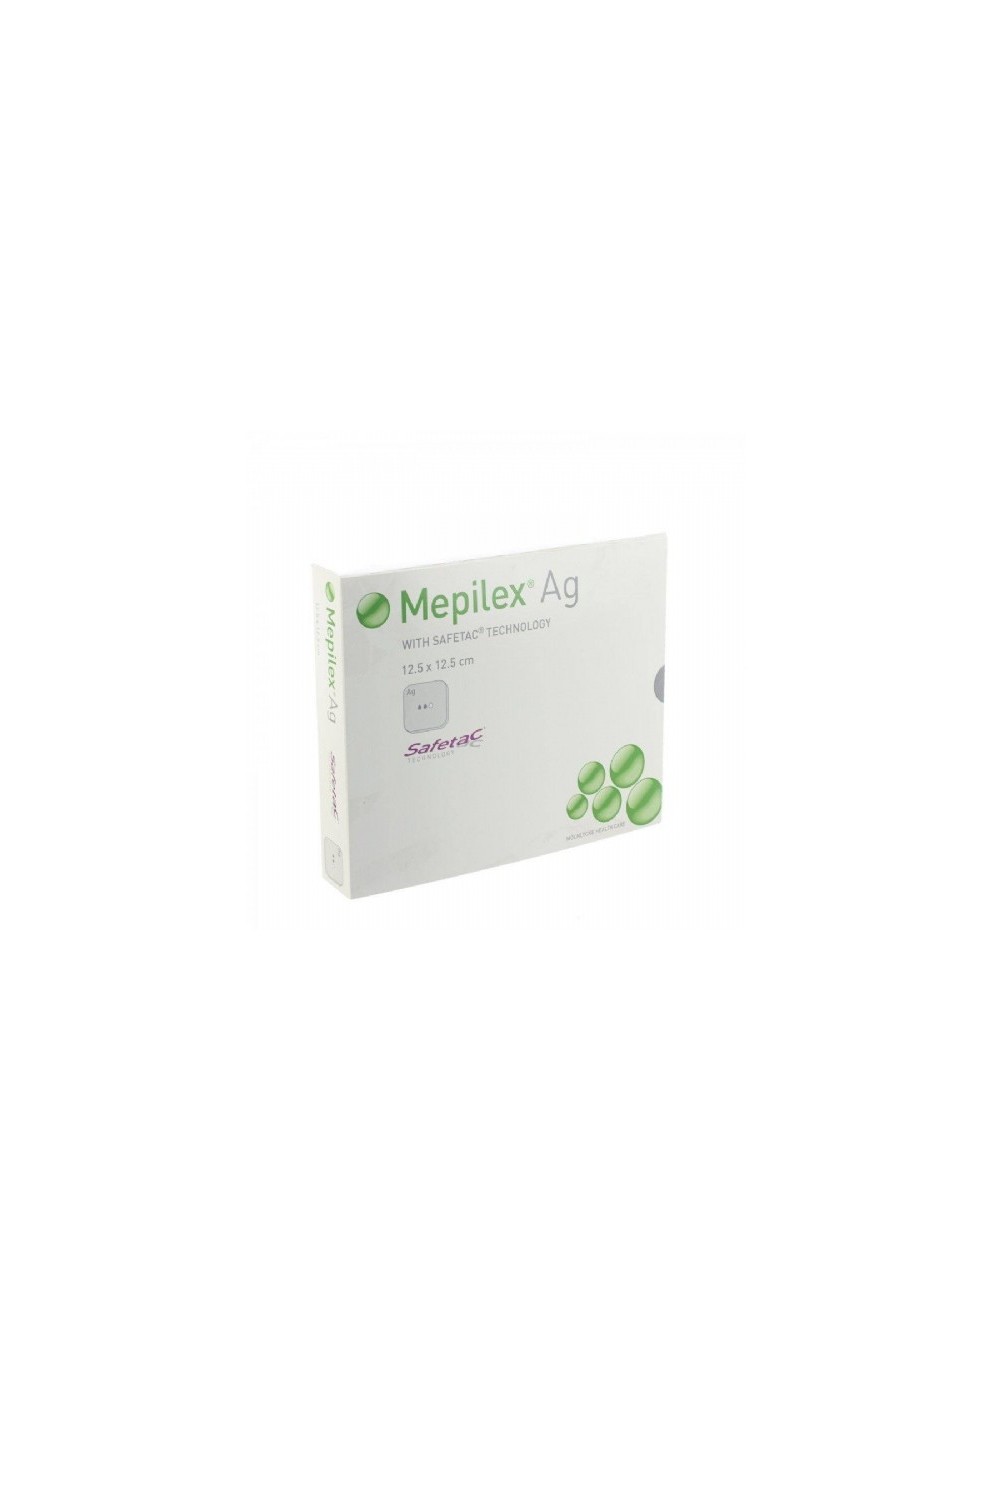 SAFETAC - Mepilex Ag 12,50 X 12,50 Cm 5 Uds